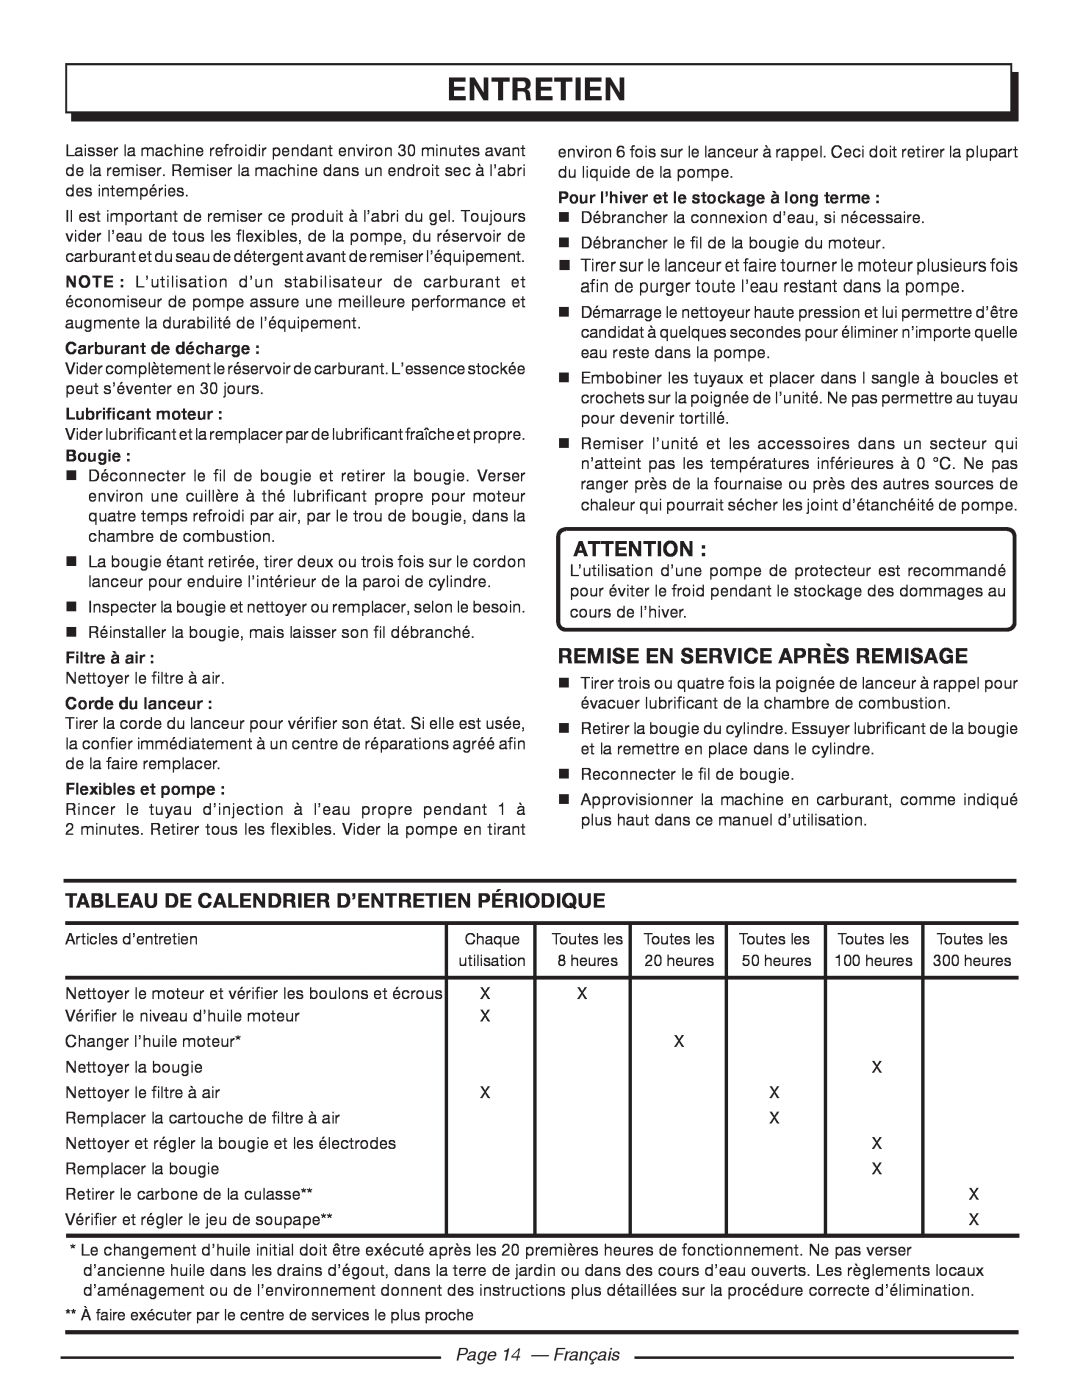 Homelite UT80522 Remise En Service Après Remisage, Tableau De Calendrier D’Entretien Périodique, Page 14 - Français 